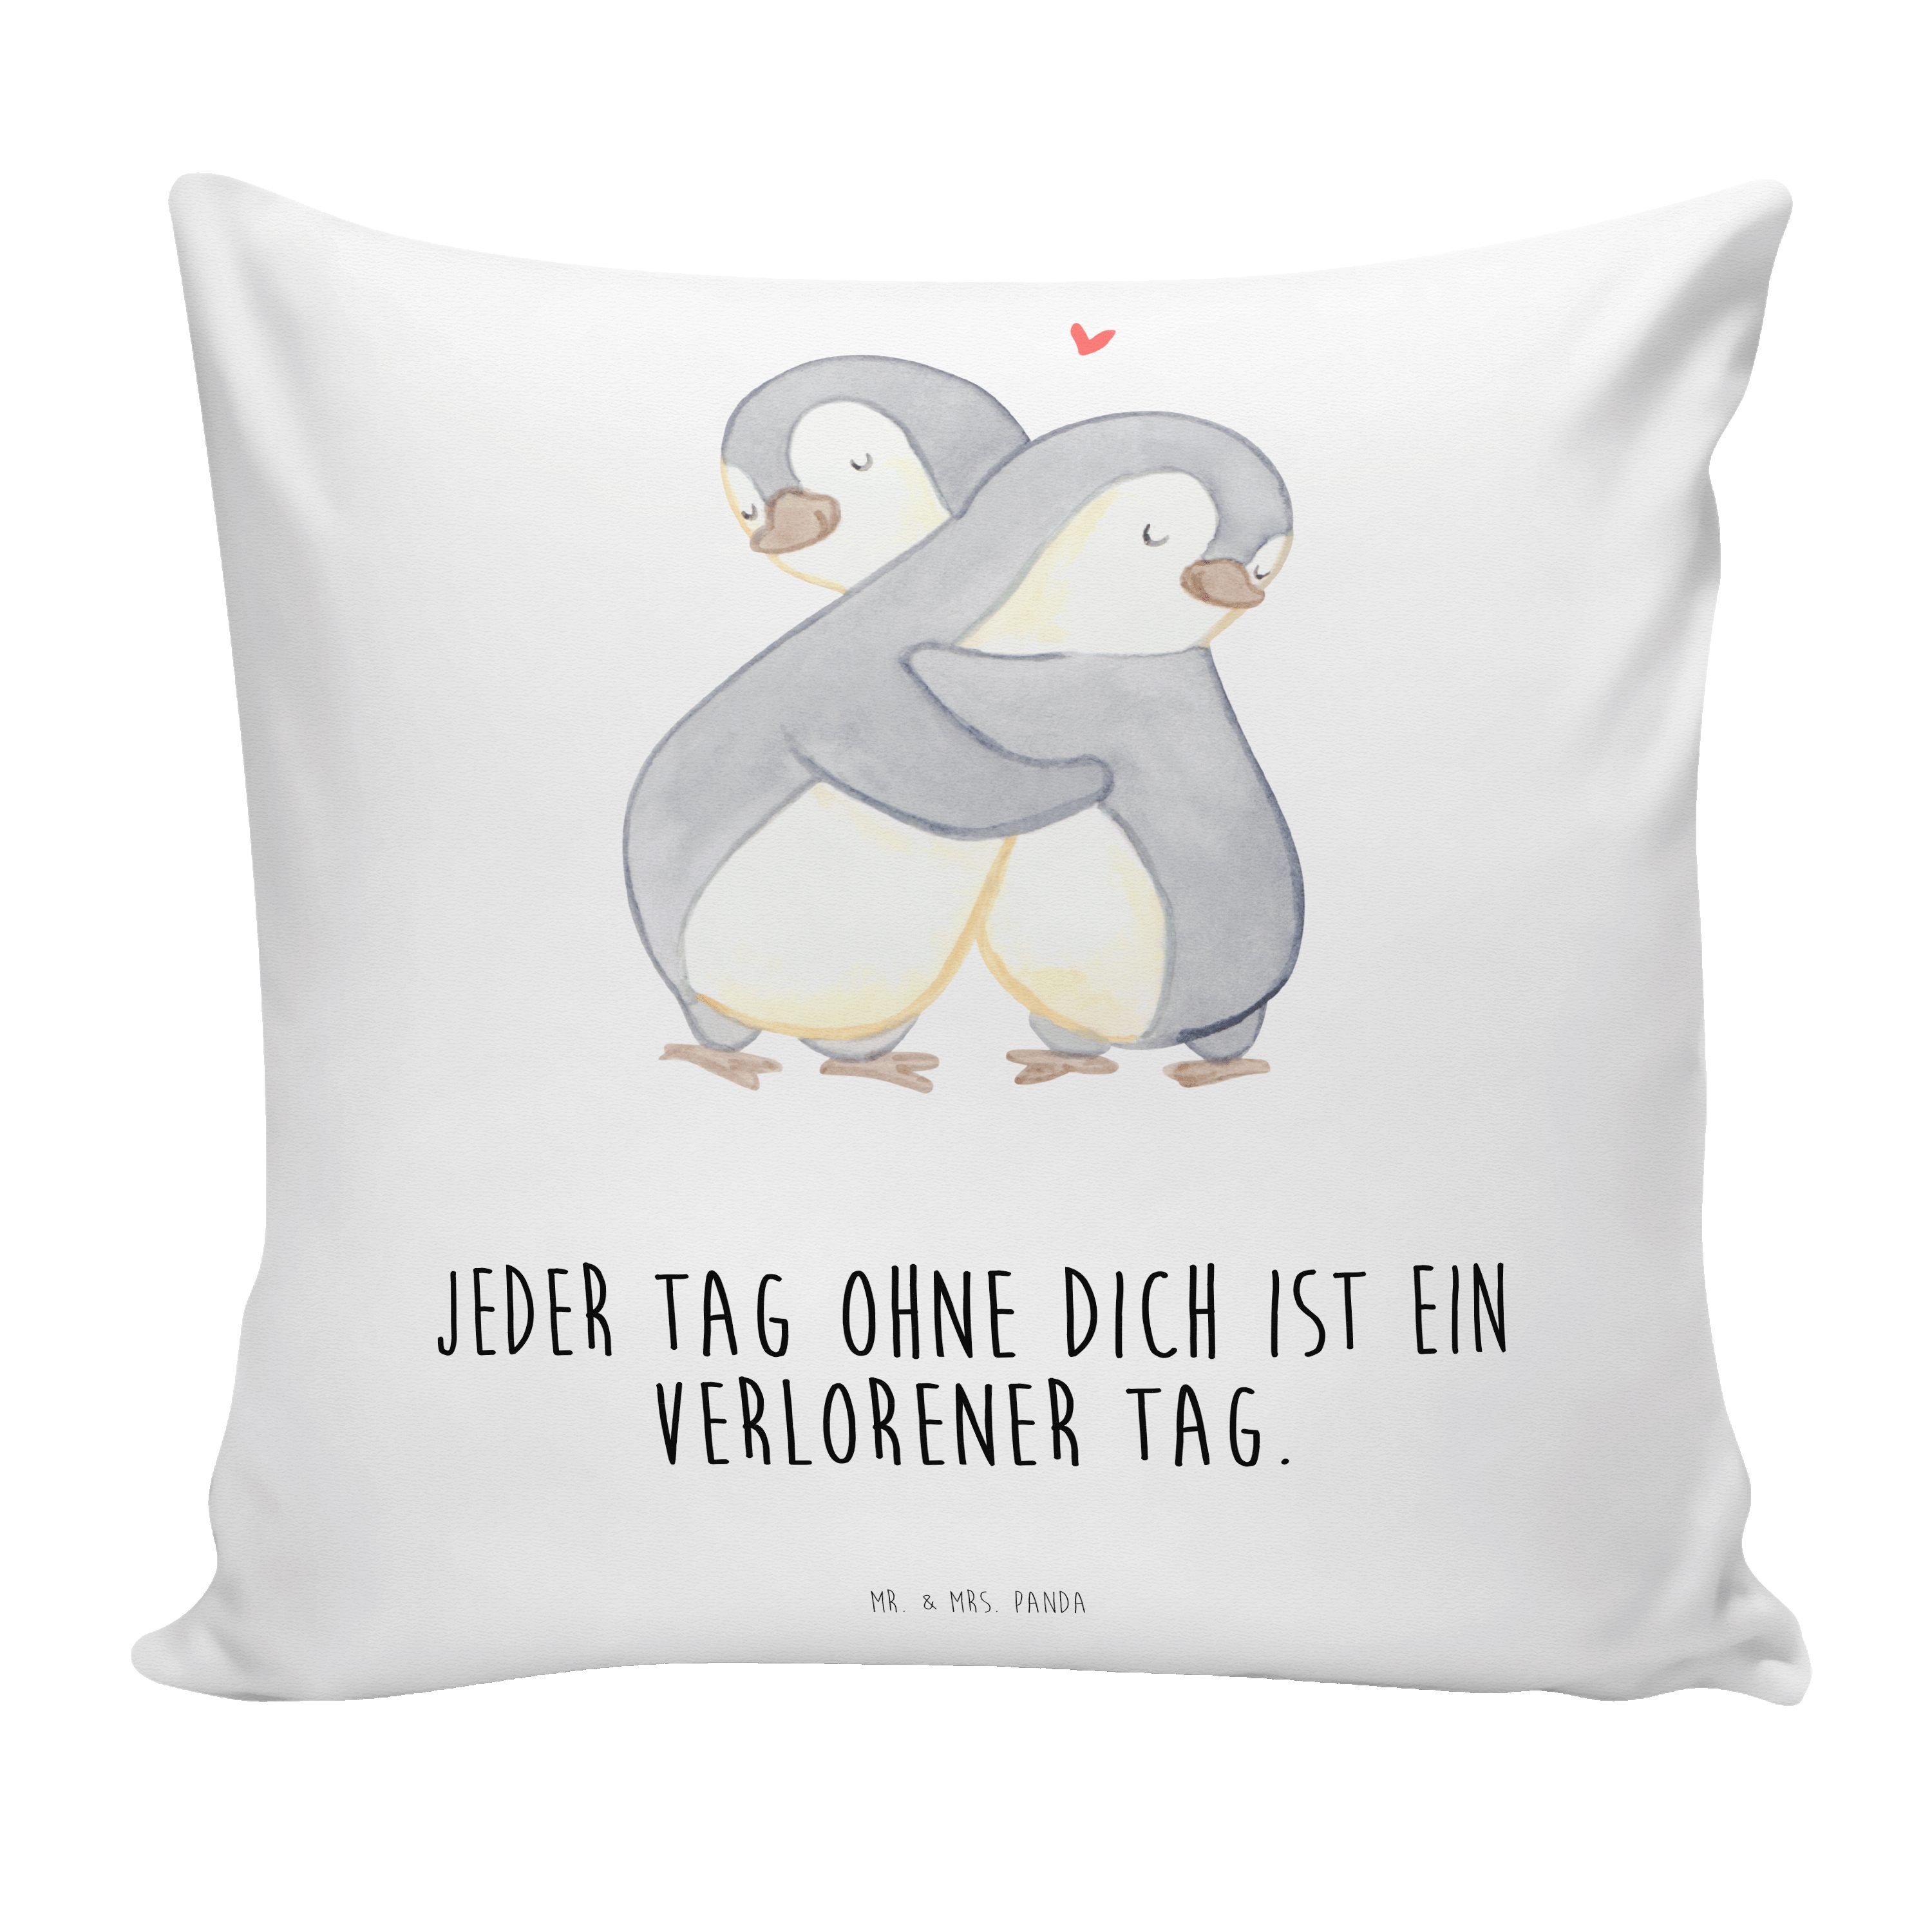 Mr. & Mrs. Panda Dekokissen Pinguine Kuscheln - Weiß - Geschenk, Hochzeitstag, Motivkissen, Sofak